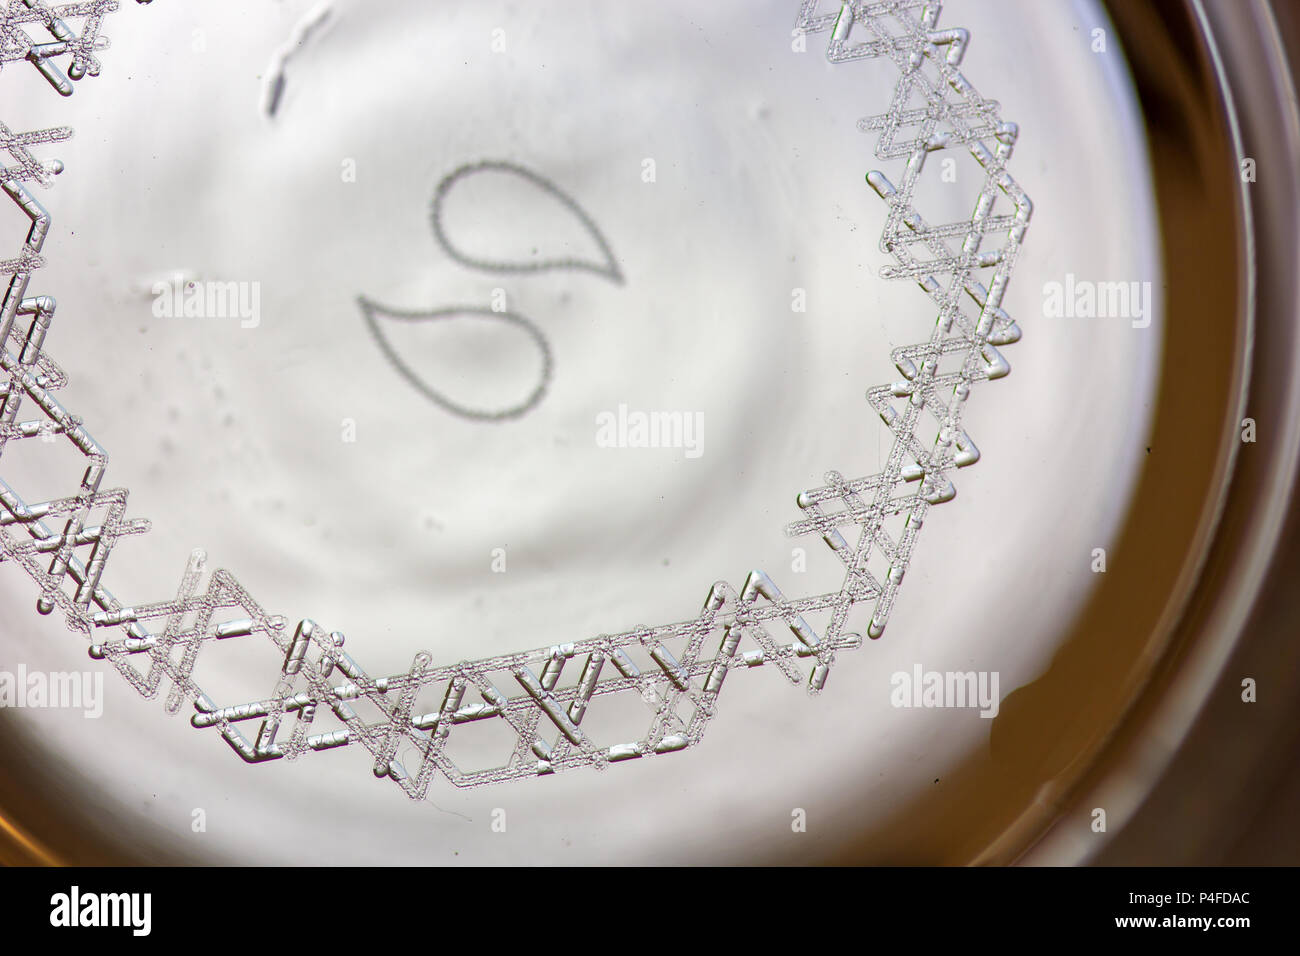 Keimbildung Markierungen graviert mit einem Laser auf der Unterseite eines Glas zu Kohlensäure von Bier zu erhöhen. Stockfoto